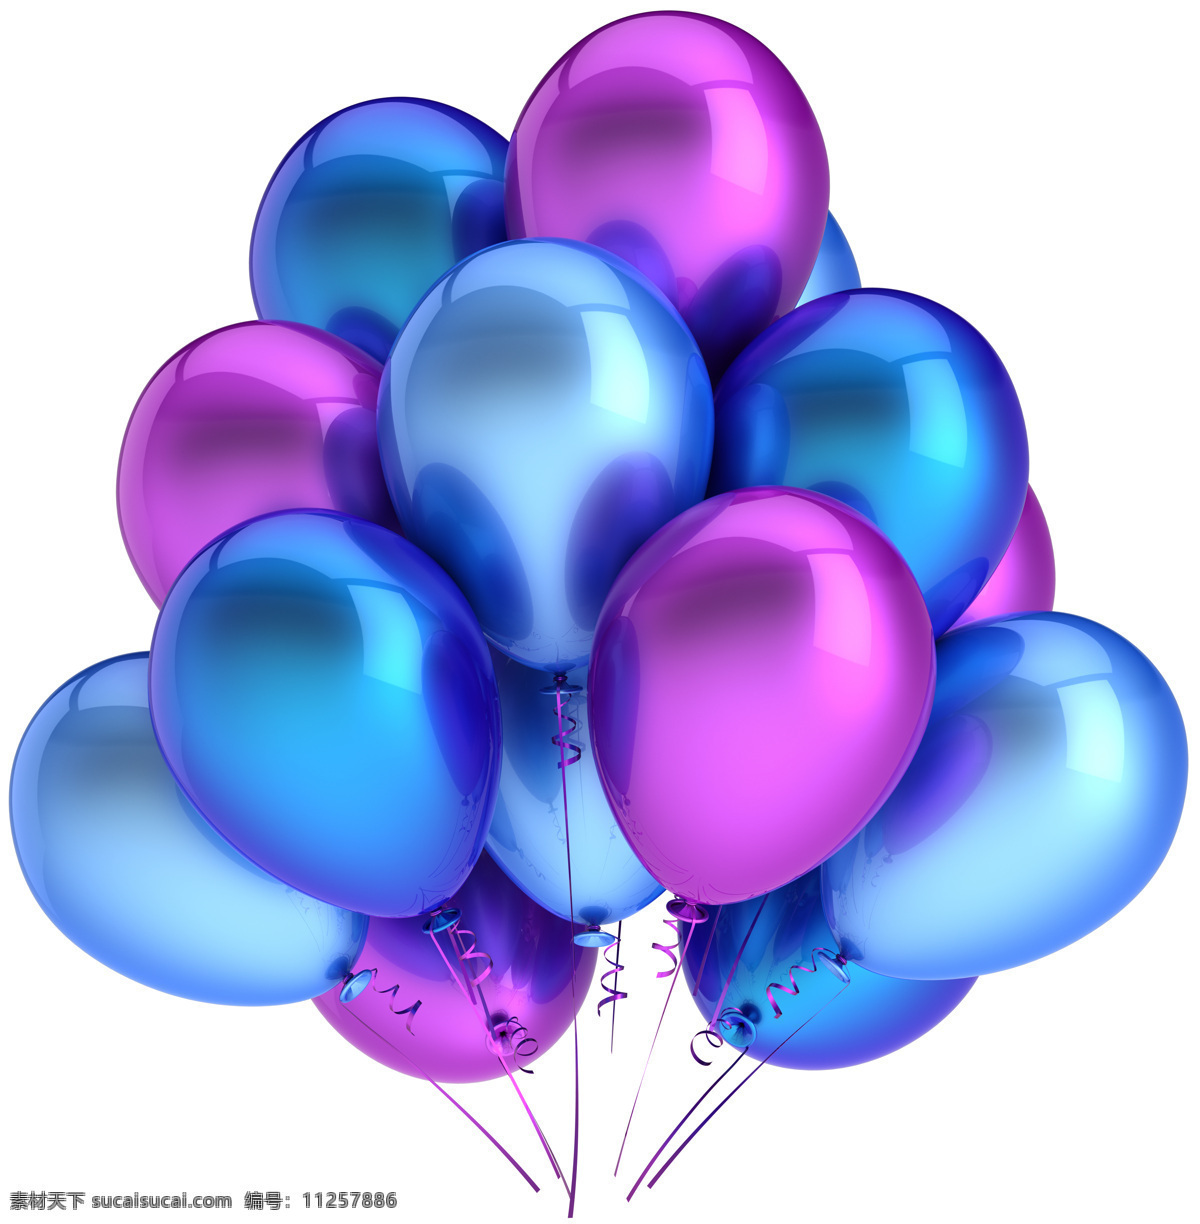 蓝紫 气球 蓝色 紫色 高清图片 节日庆典 生活百科